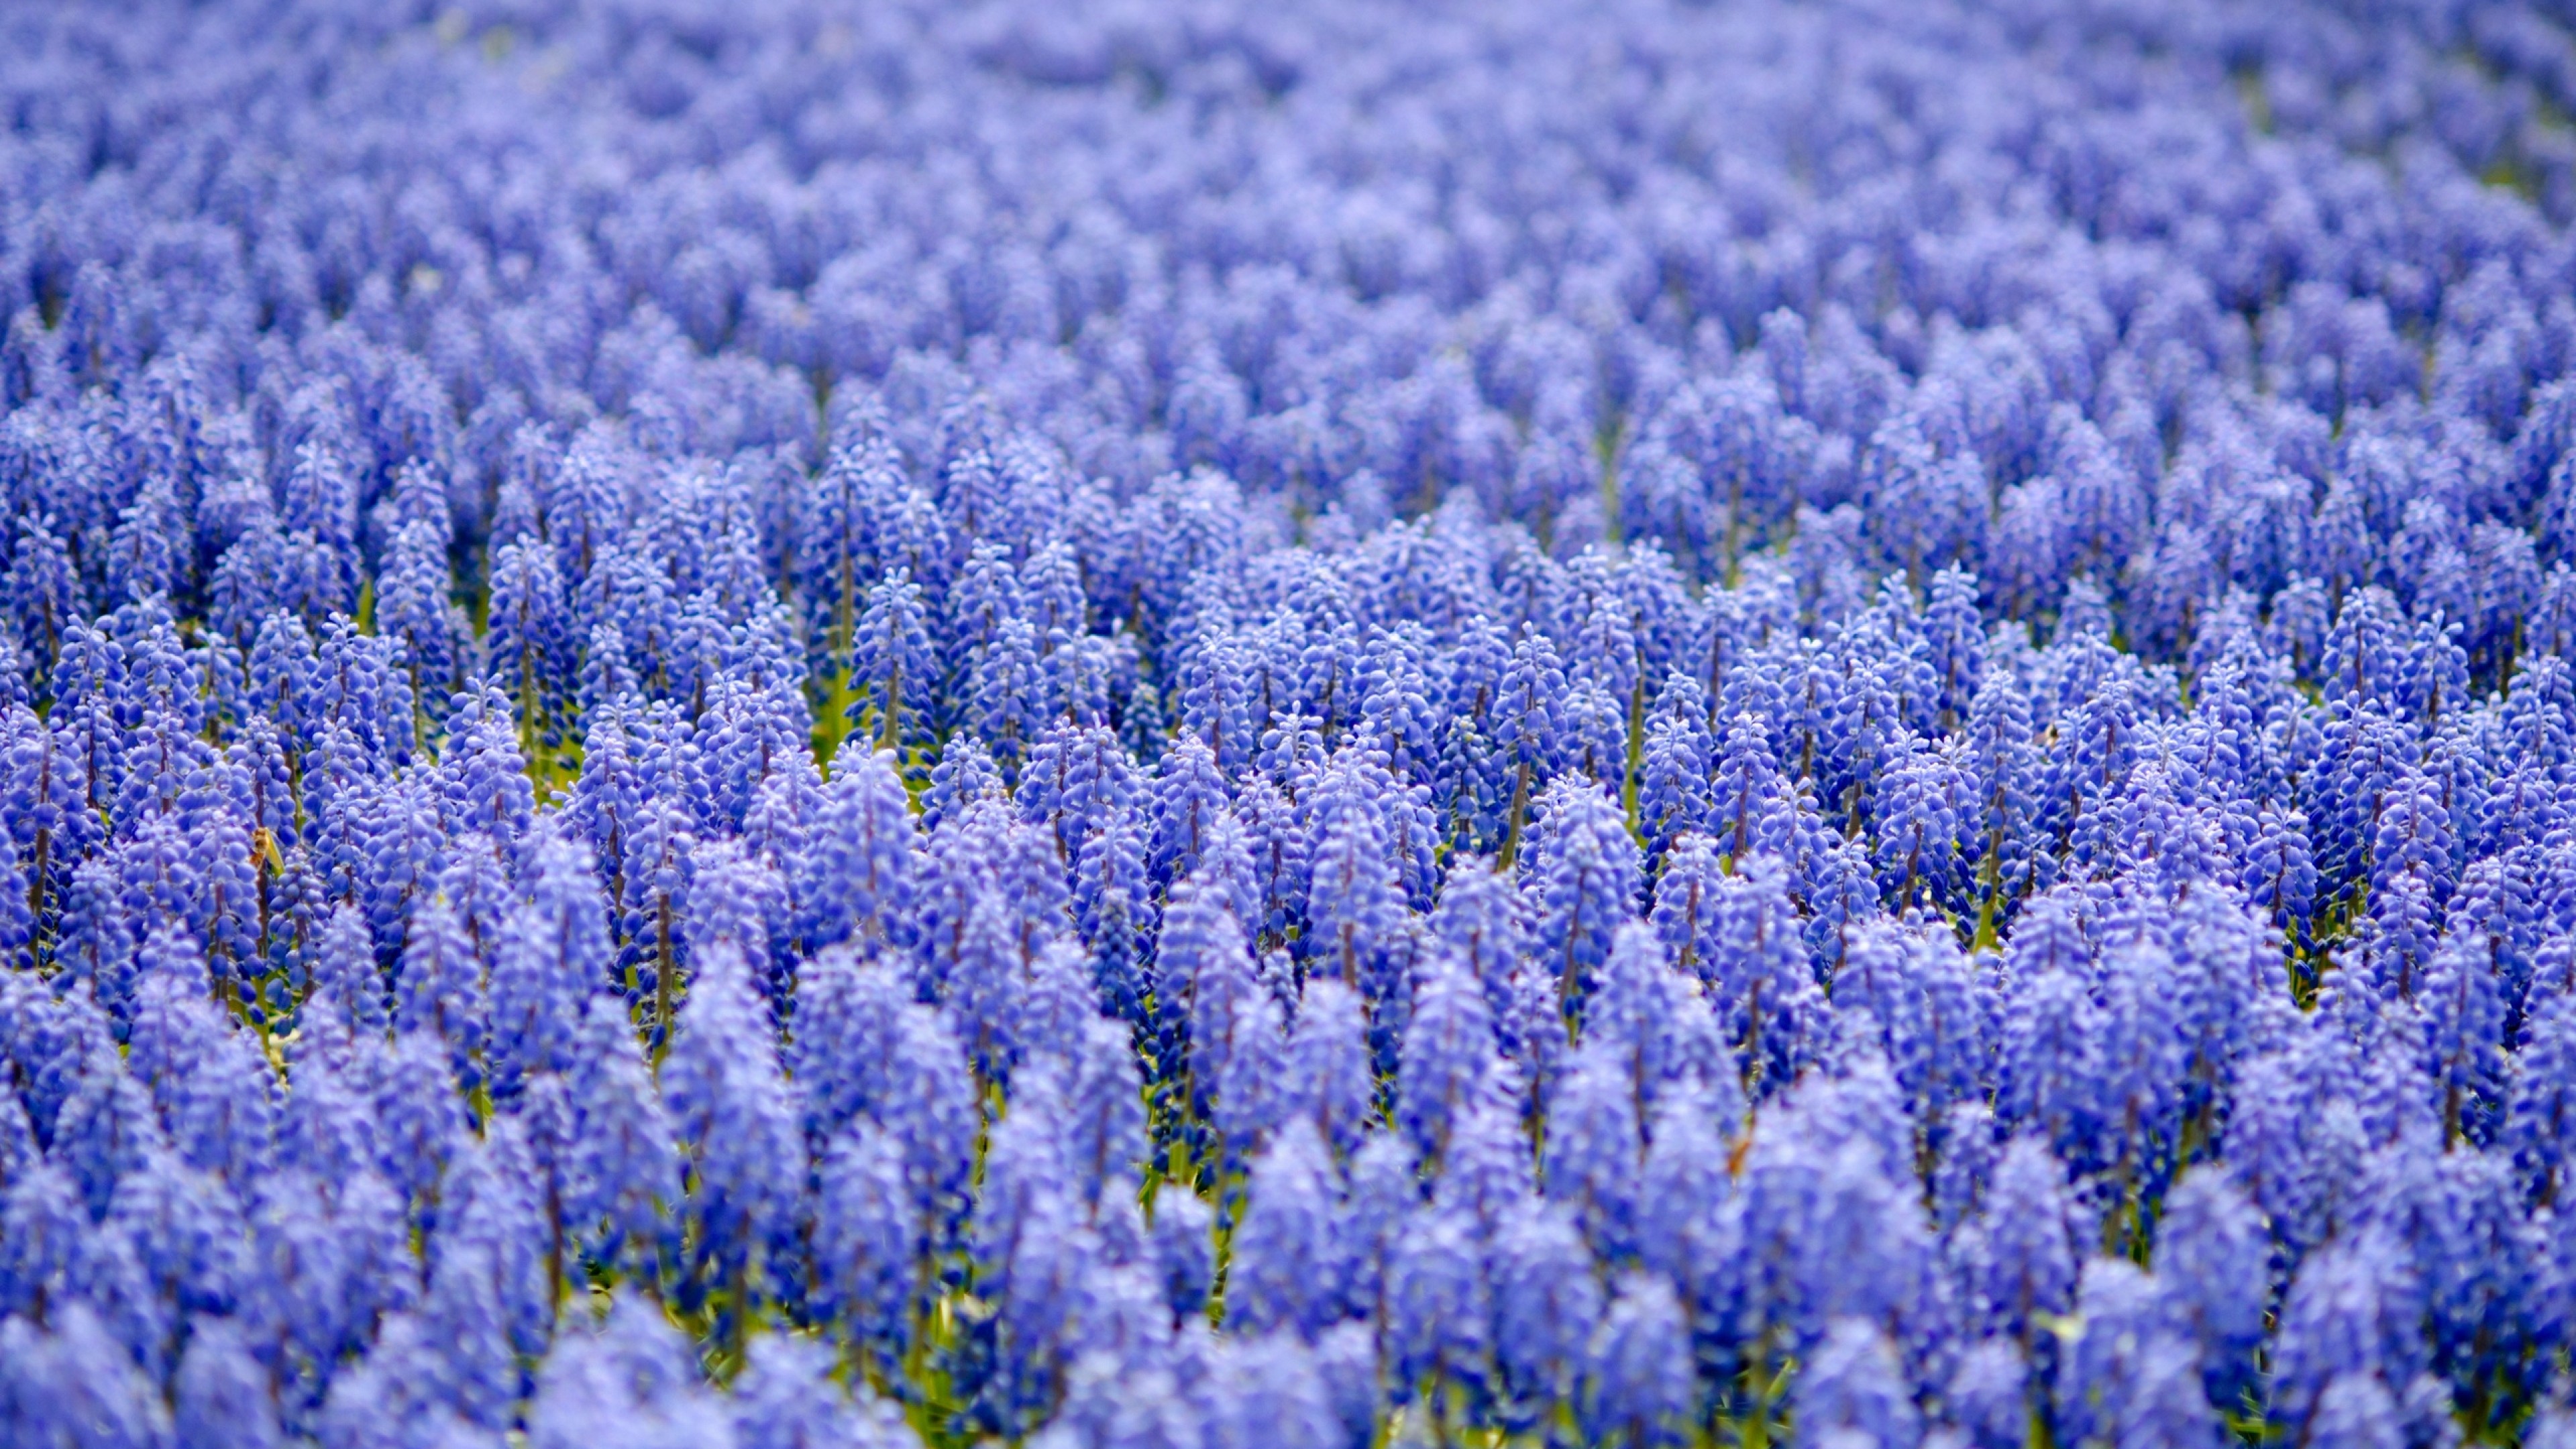 3840x2160  Wallpaper muscari, blue, field, lot, blurring